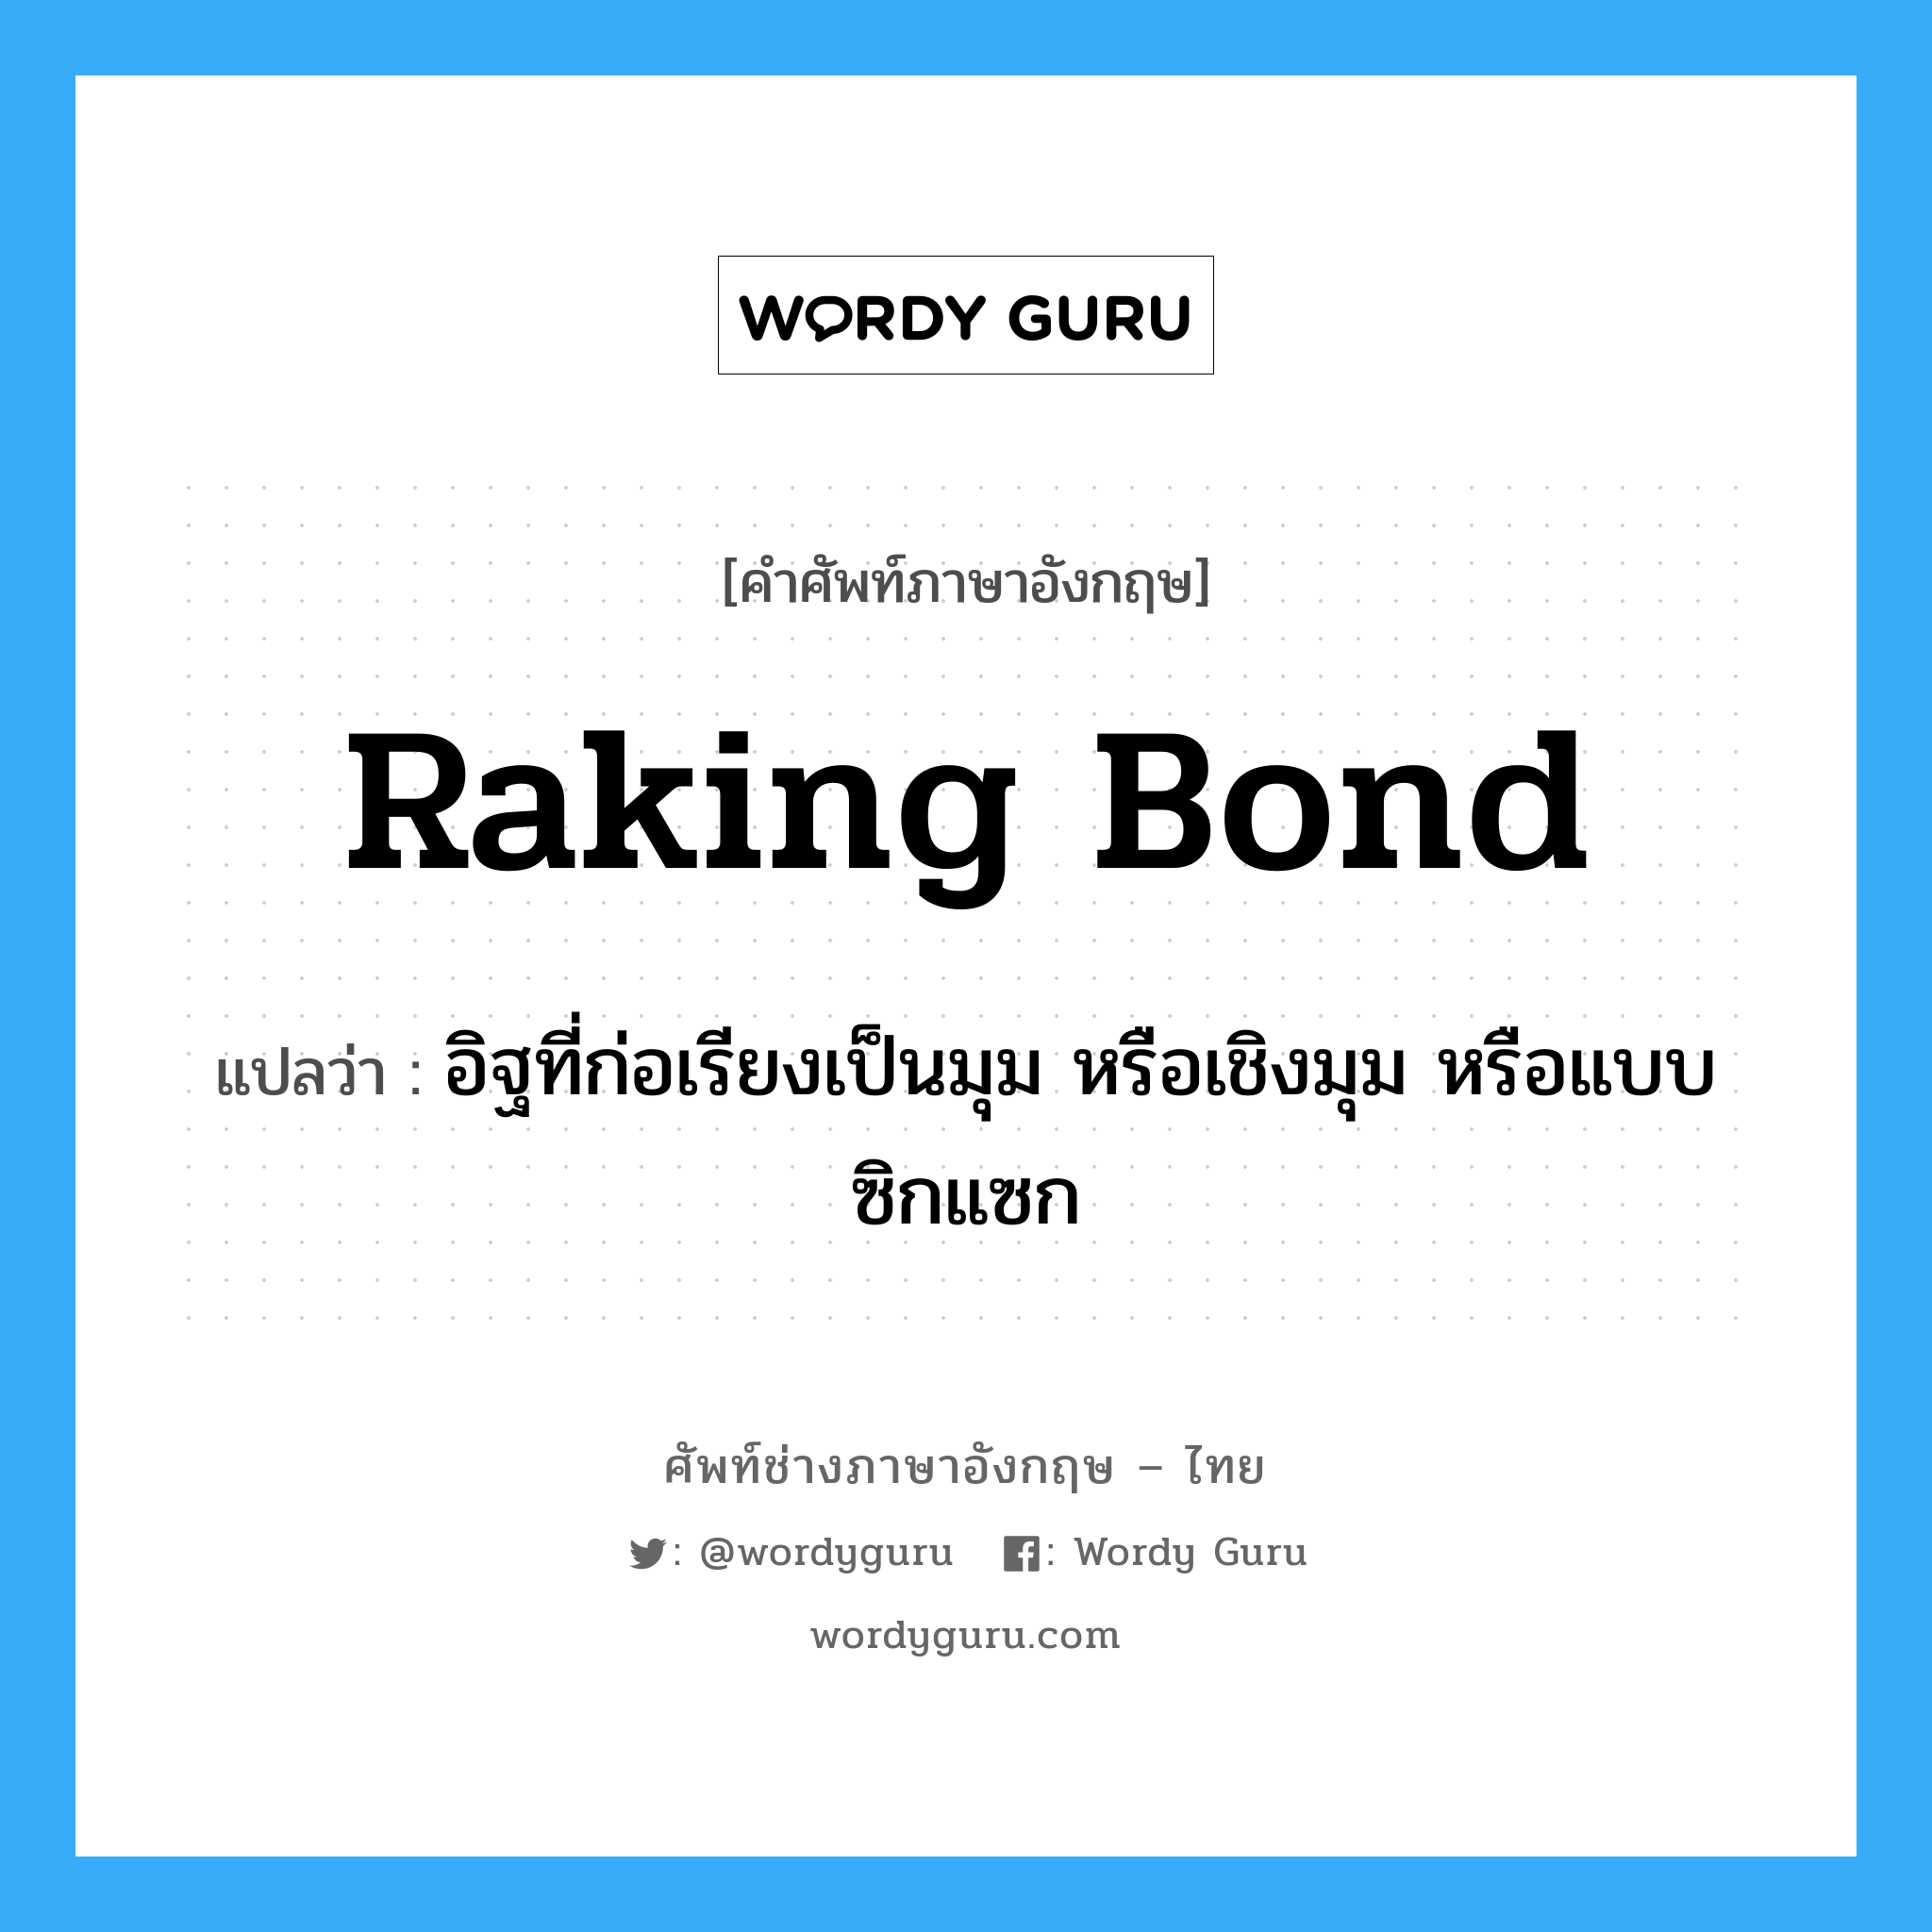 raking bond แปลว่า?, คำศัพท์ช่างภาษาอังกฤษ - ไทย raking bond คำศัพท์ภาษาอังกฤษ raking bond แปลว่า อิฐที่ก่อเรียงเป็นมุม หรือเชิงมุม หรือแบบซิกแซก